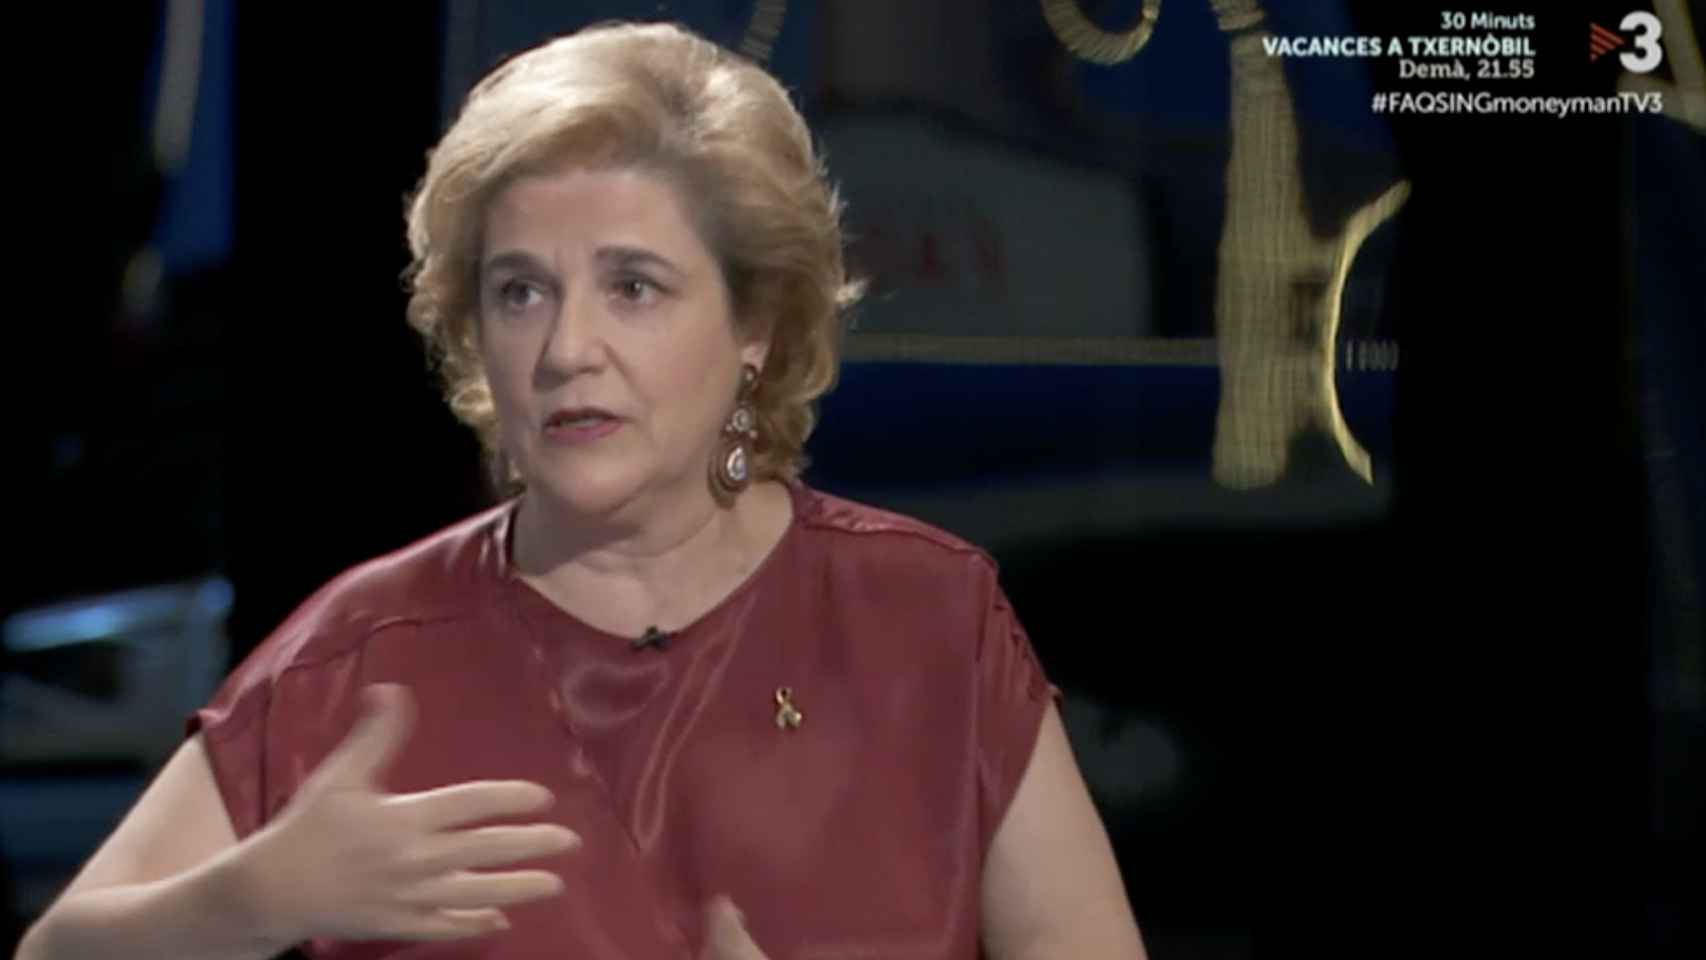 Pilar Rahola durante una de sus intervenciones en FAQS / TV3